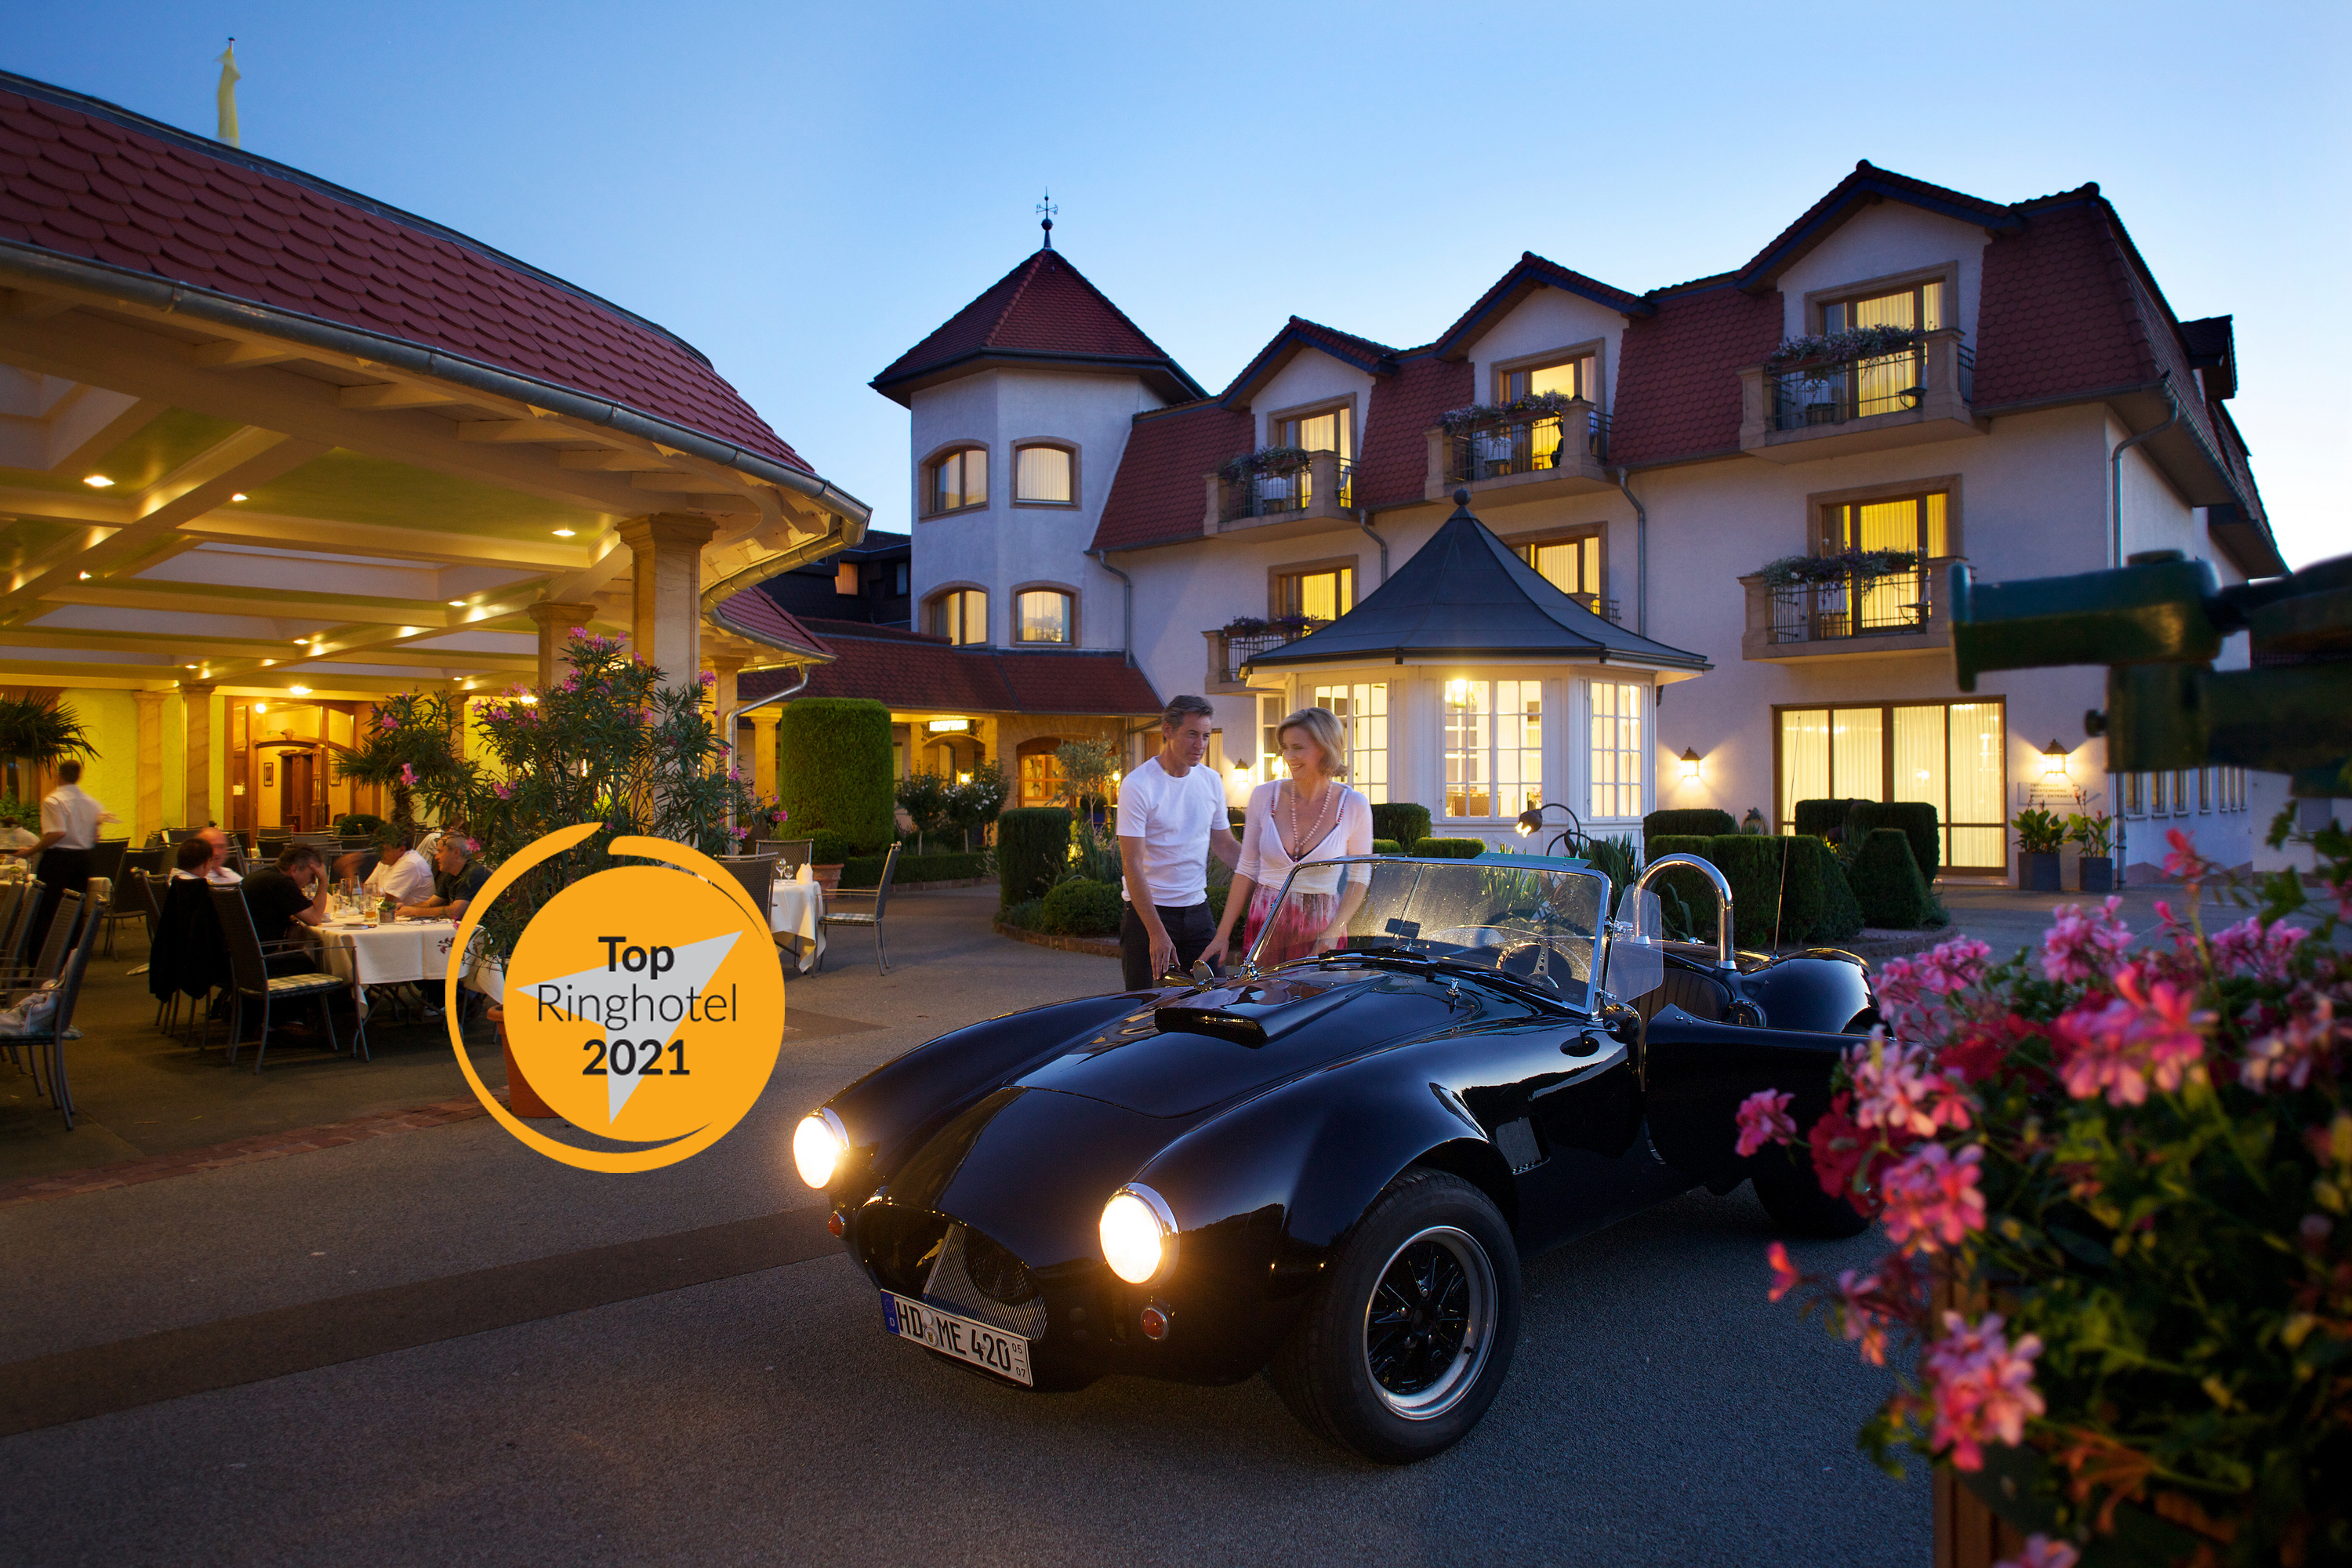 Südliches Flair erwartet Sie in unserem 4 Sterne Hotel Ringhotel Winzerhof in Rauenberg, umgeben von Weinbergen des Kraichgaus 